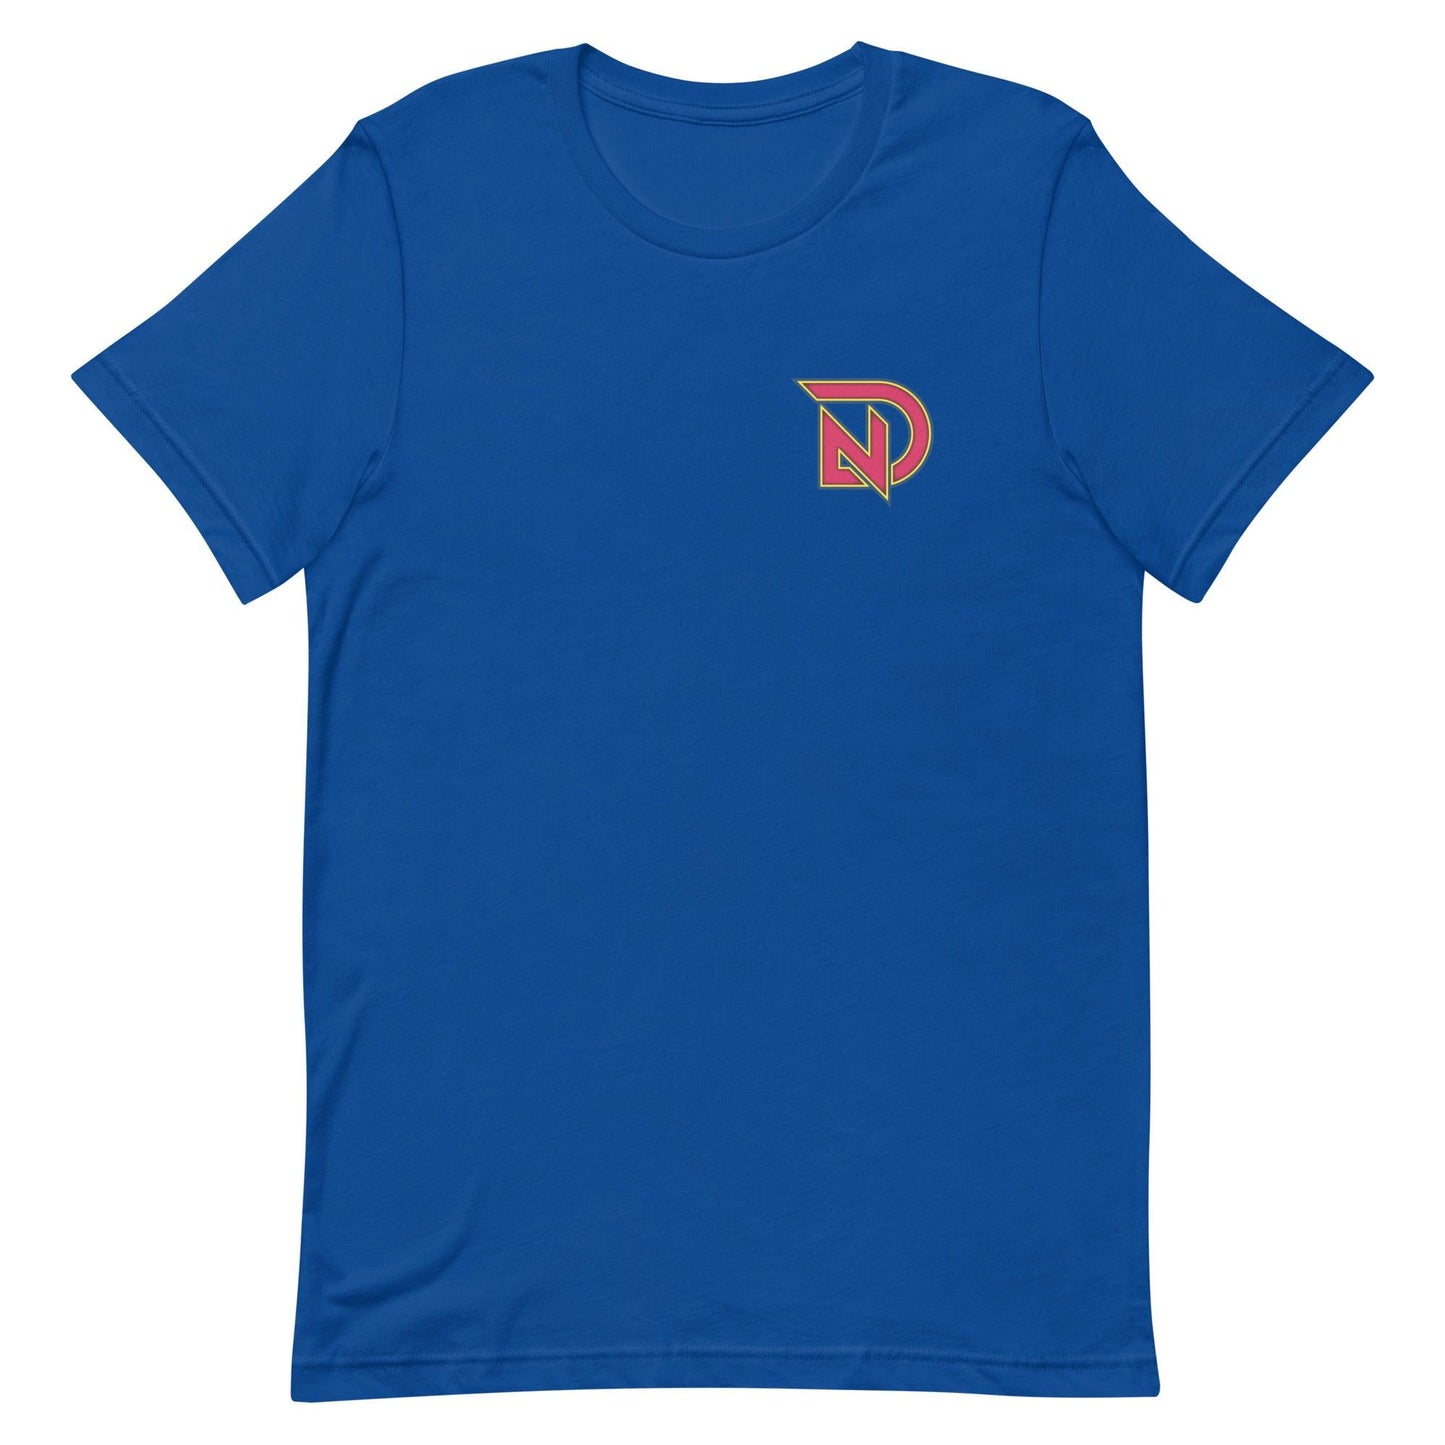 Nick Dunn "Elite" t-shirt - Fan Arch